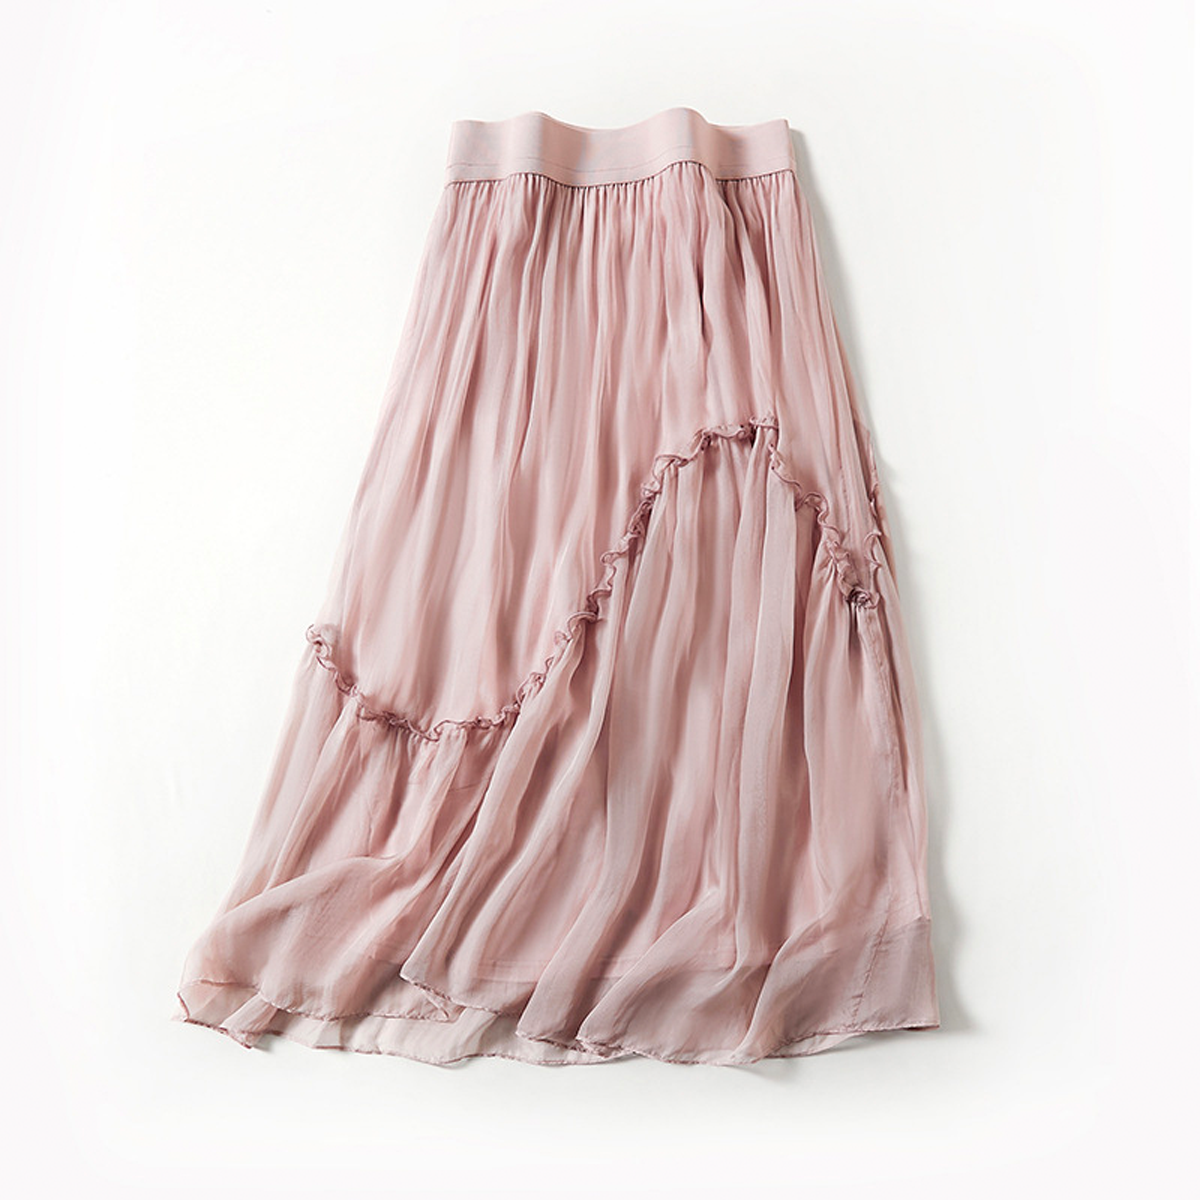 Mulberry Silk Beach Skirt